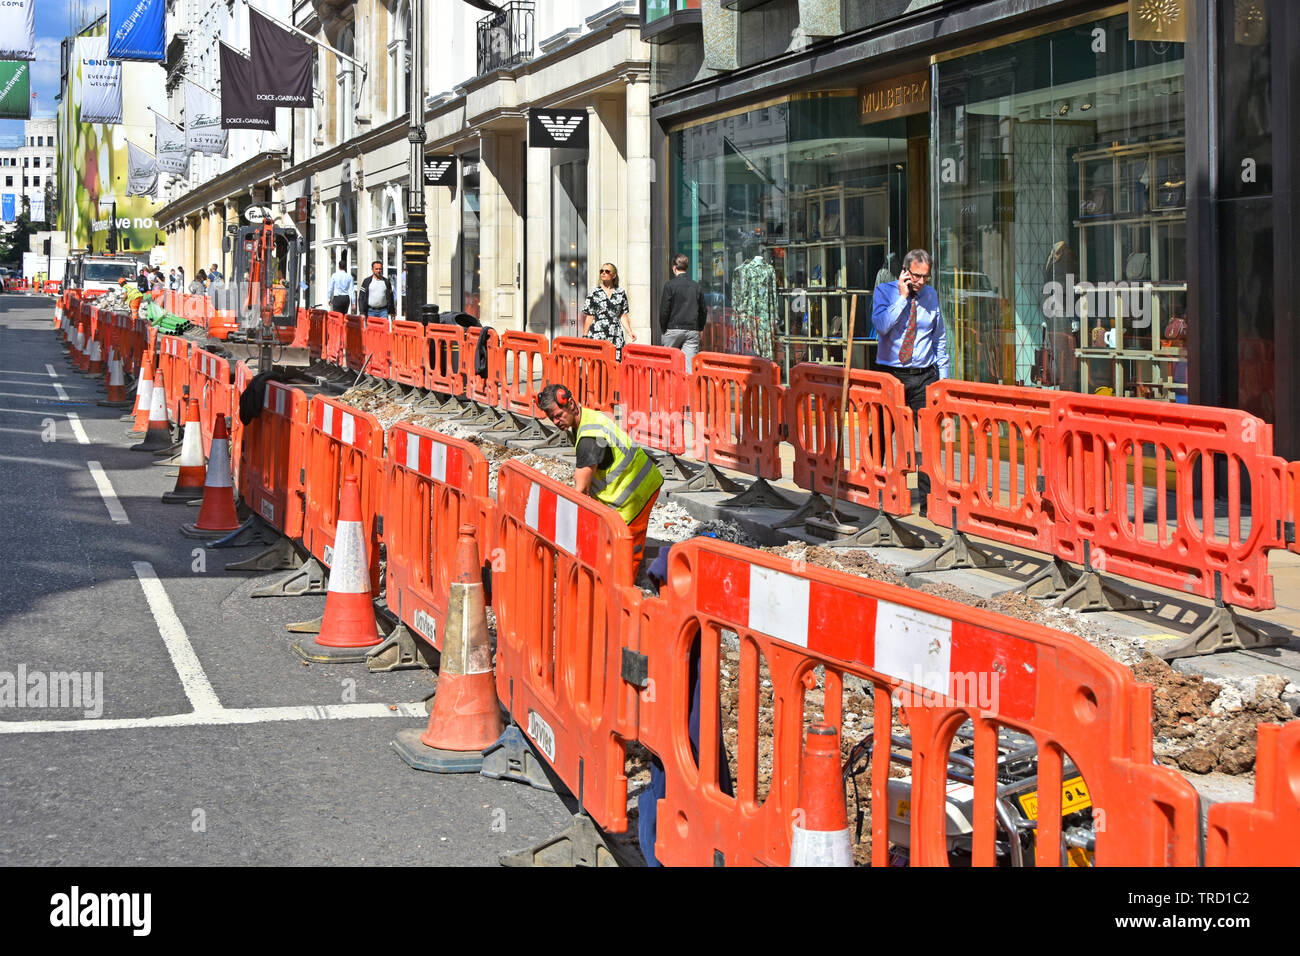 Cônes de plastique rouge & barrière entourant les travaux de voirie pour l'entrepreneur et les travailleurs de creuser des tranchées dans la rue câble routes rues & West End de Londres Angleterre Royaume-uni Banque D'Images